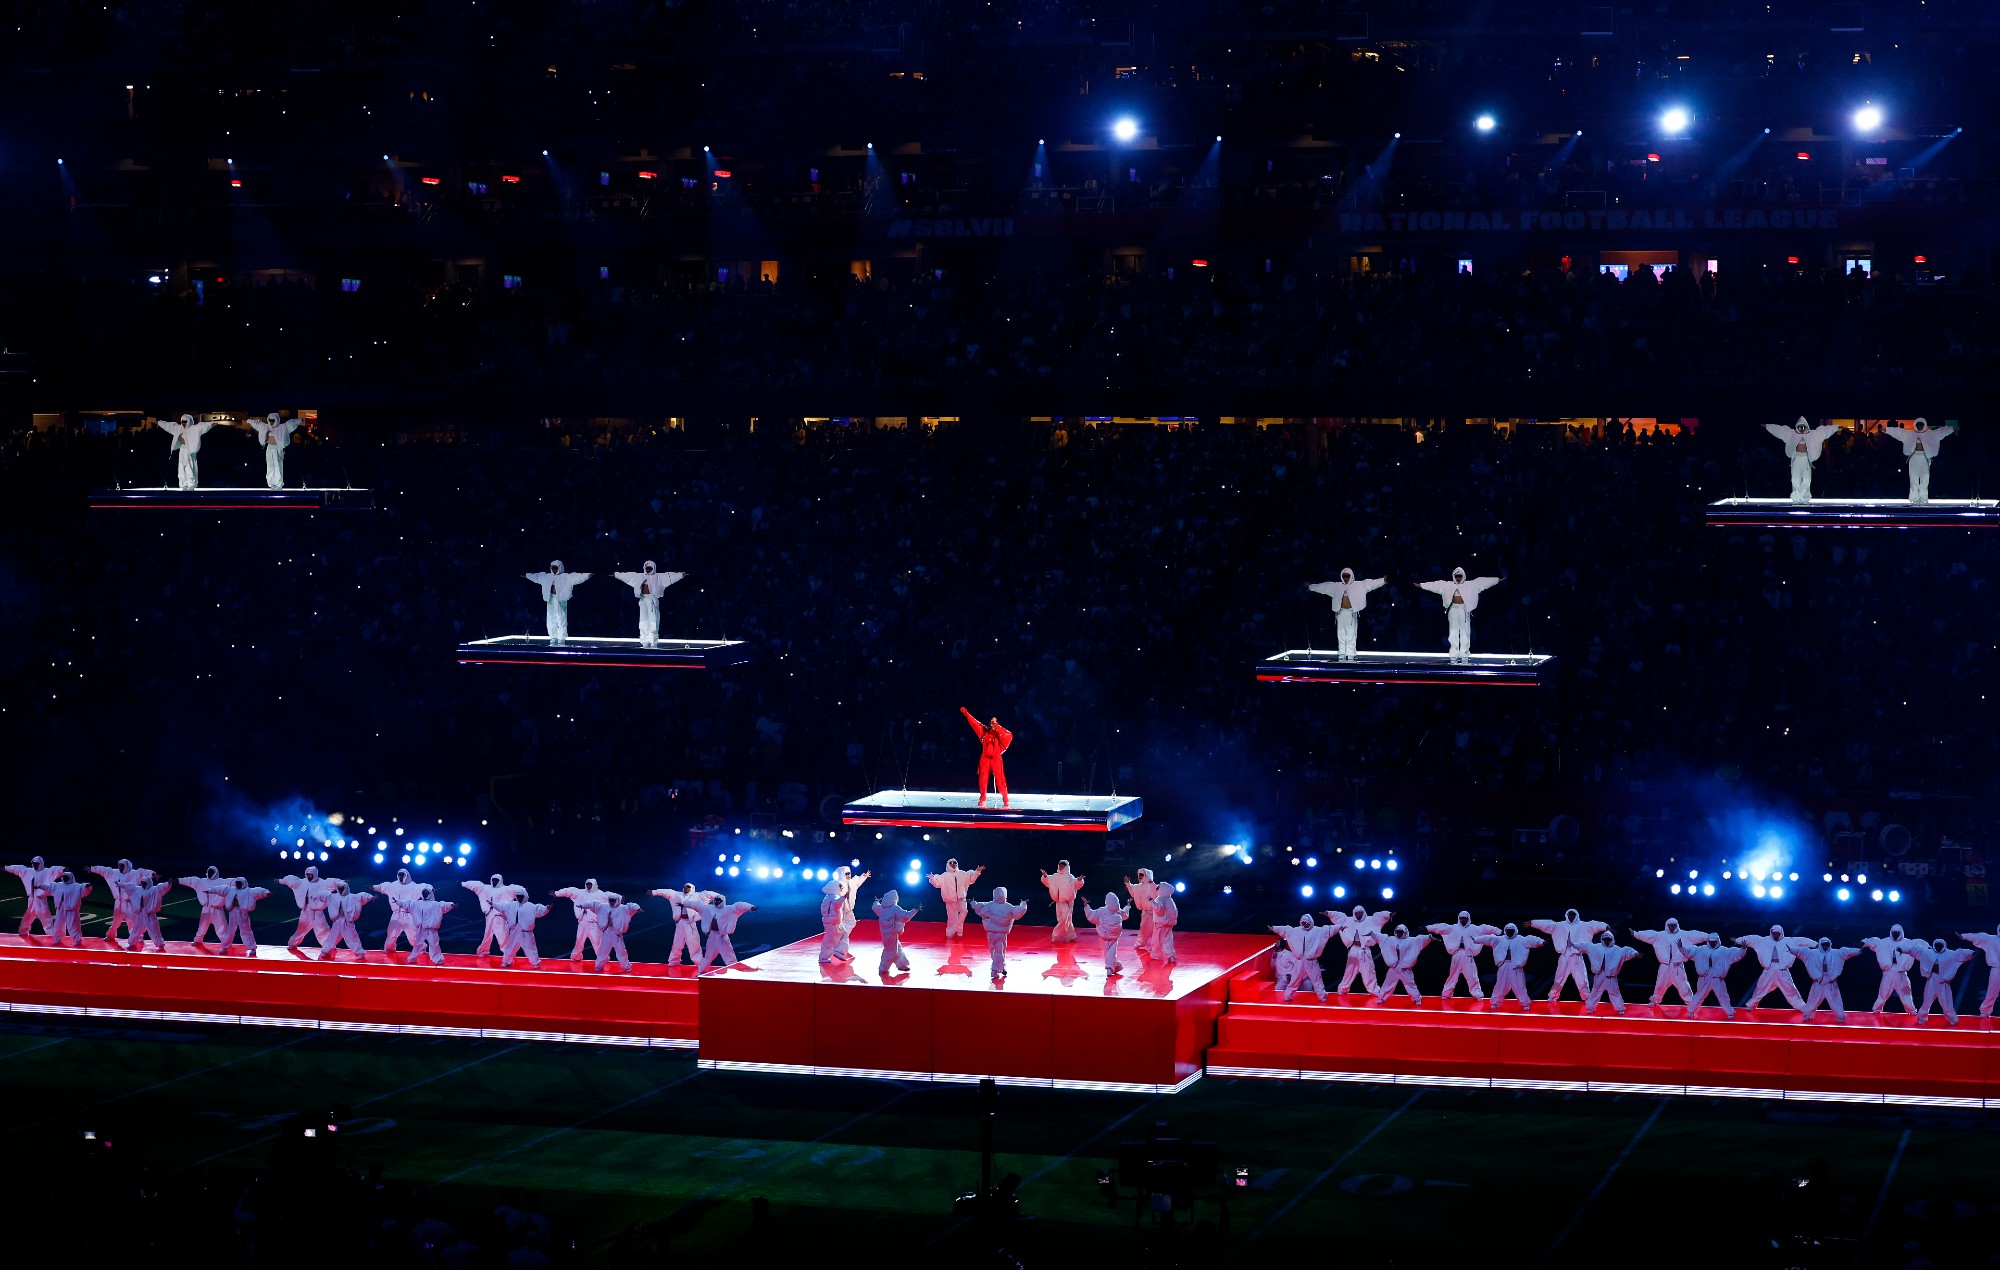 Les fans comparent la performance de Rihanna au Super Bowl à "Super Smash Bros."